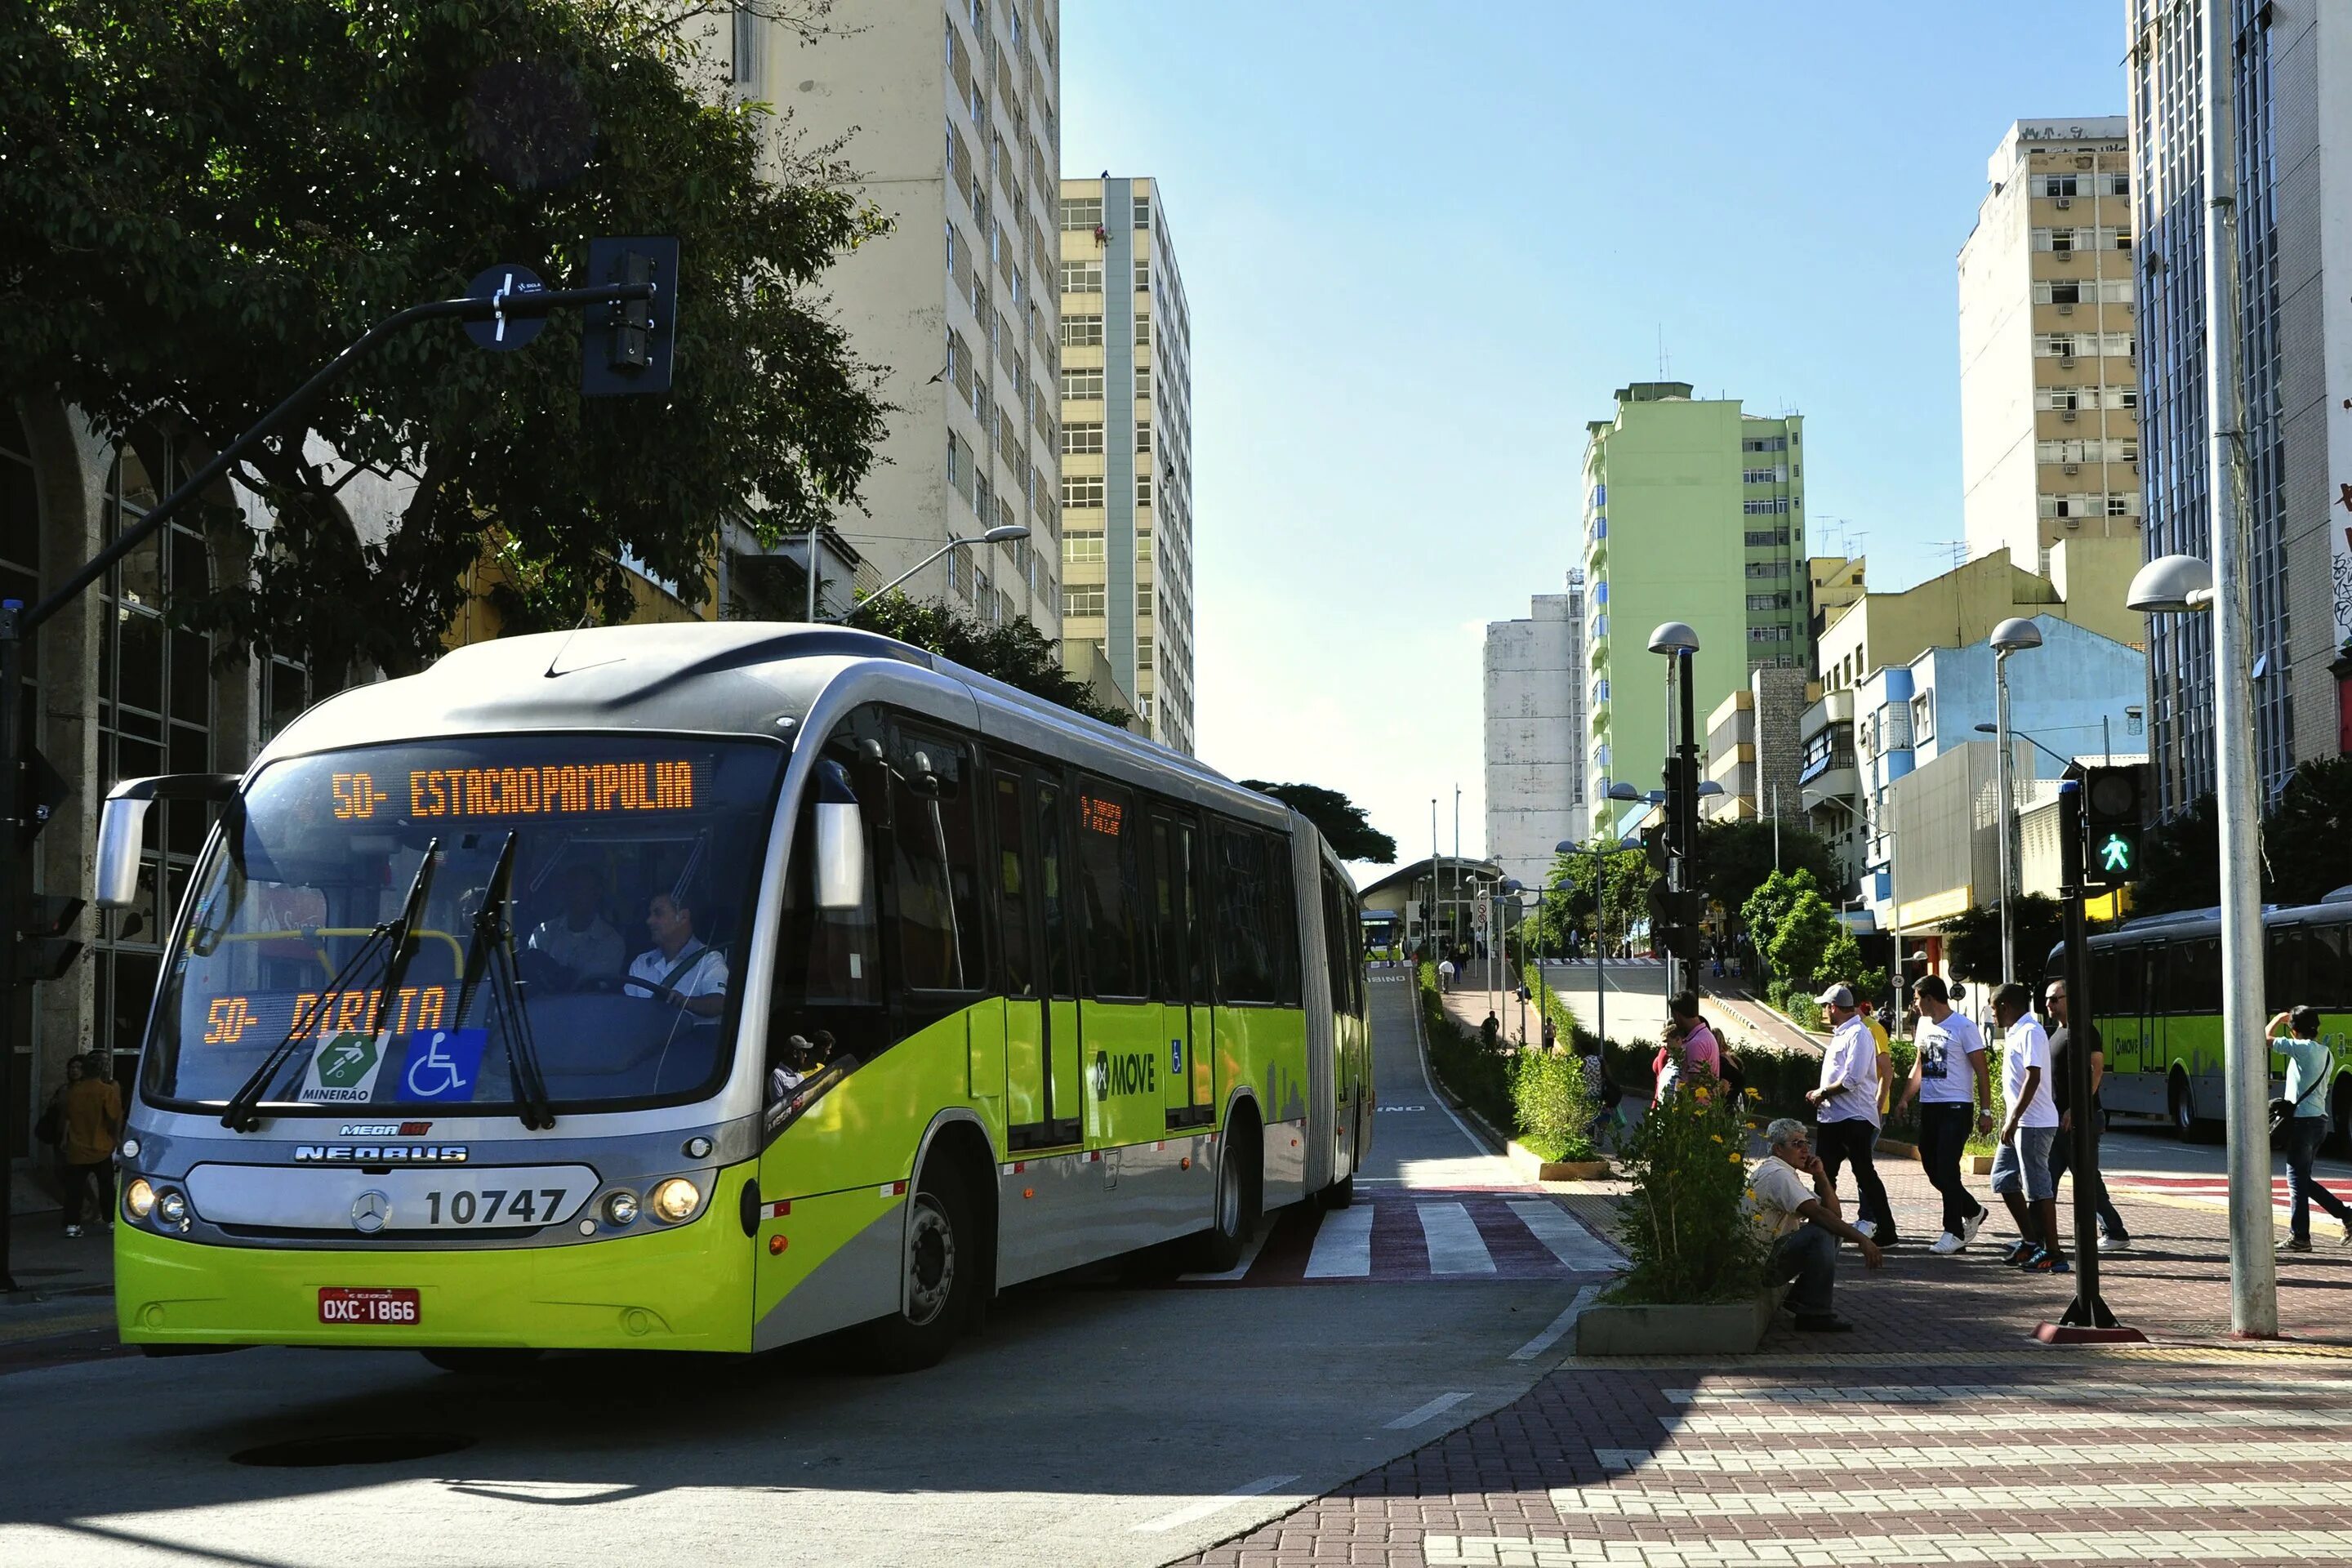 Транспорт. Йоханнесбург городской транспорт. Автобусы за границей. Летний транспорт. City transport автобус.